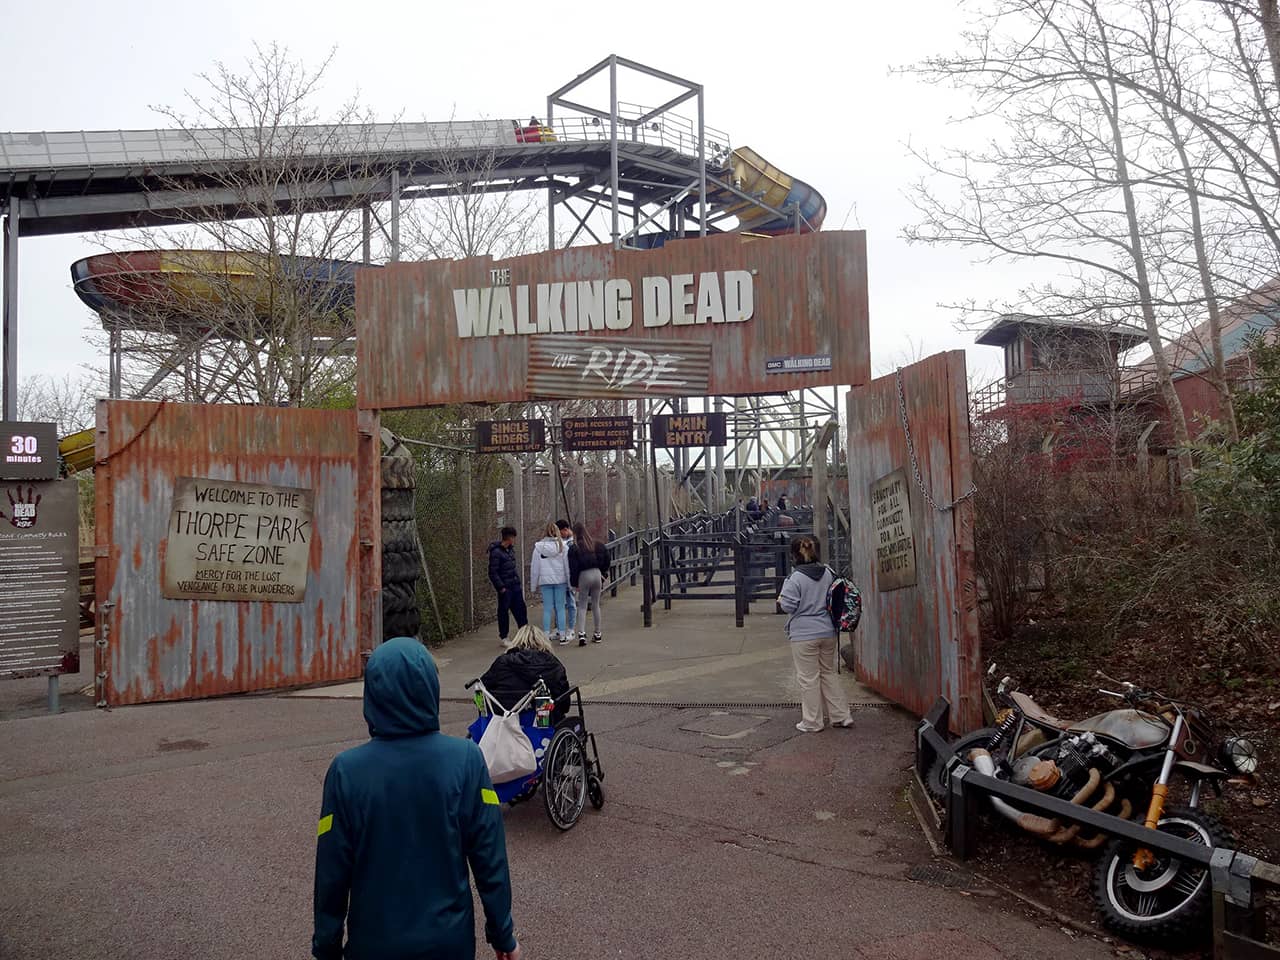 Walking Dead: The Ride